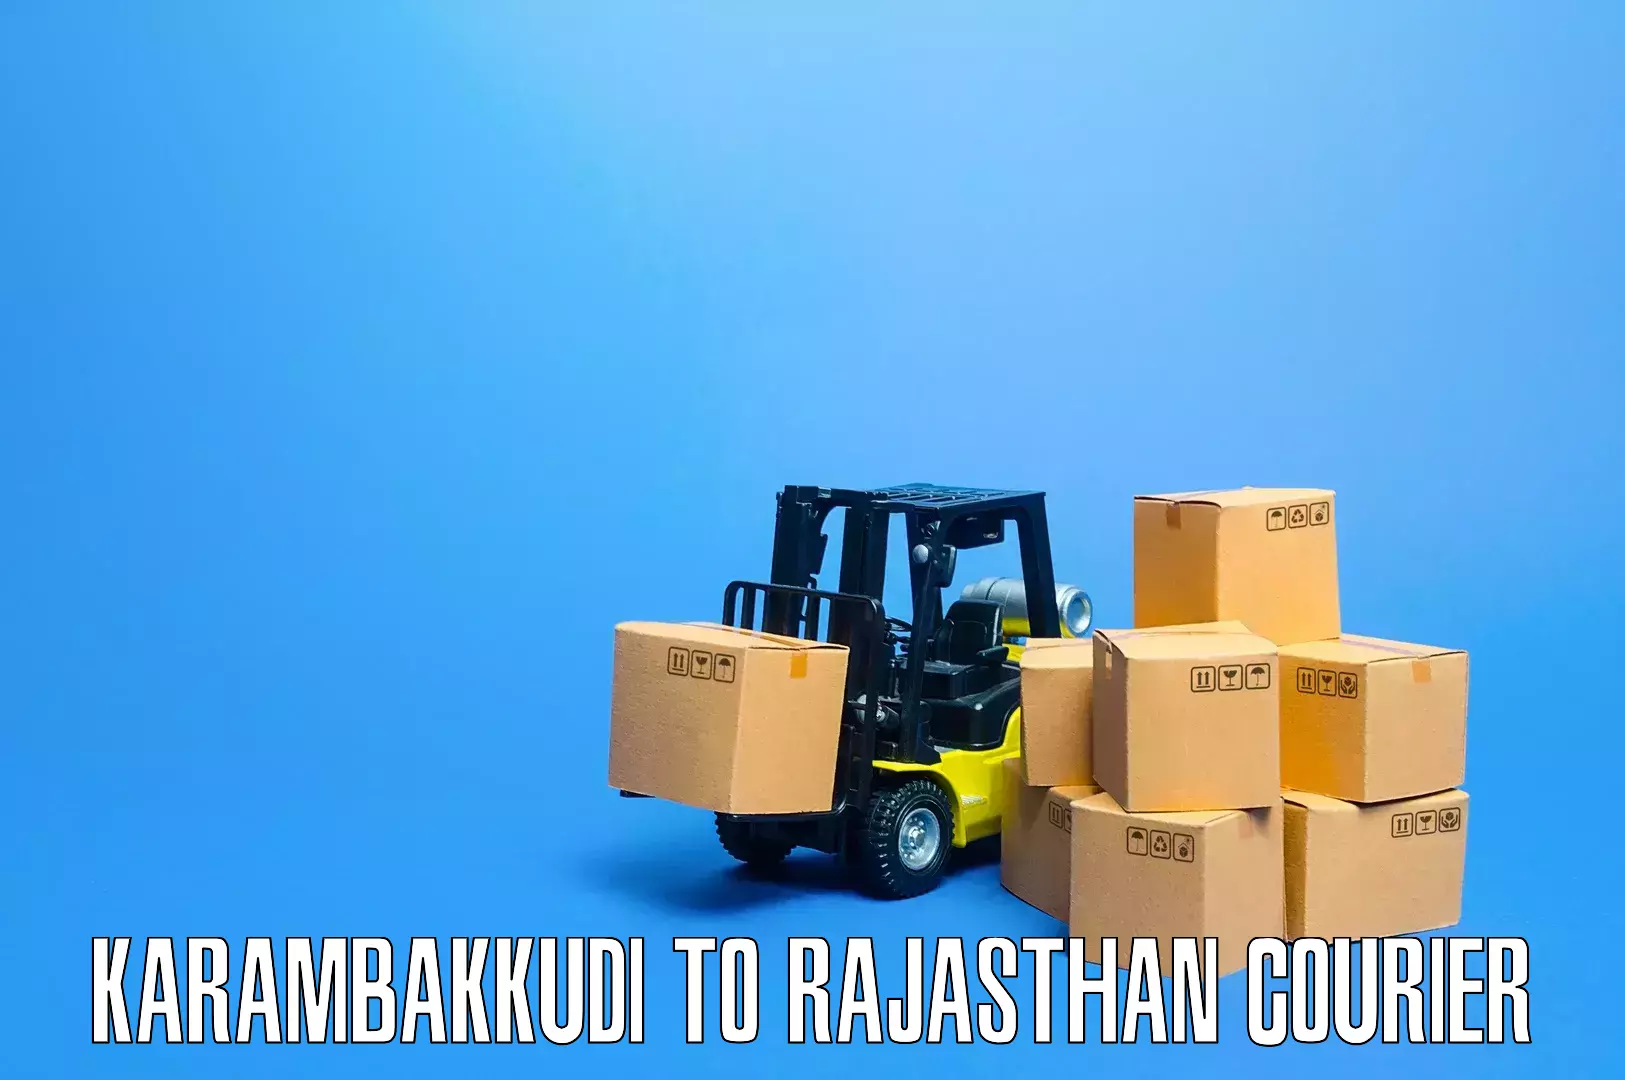 Personalized furniture moving Karambakkudi to Rajgarh Rajasthan